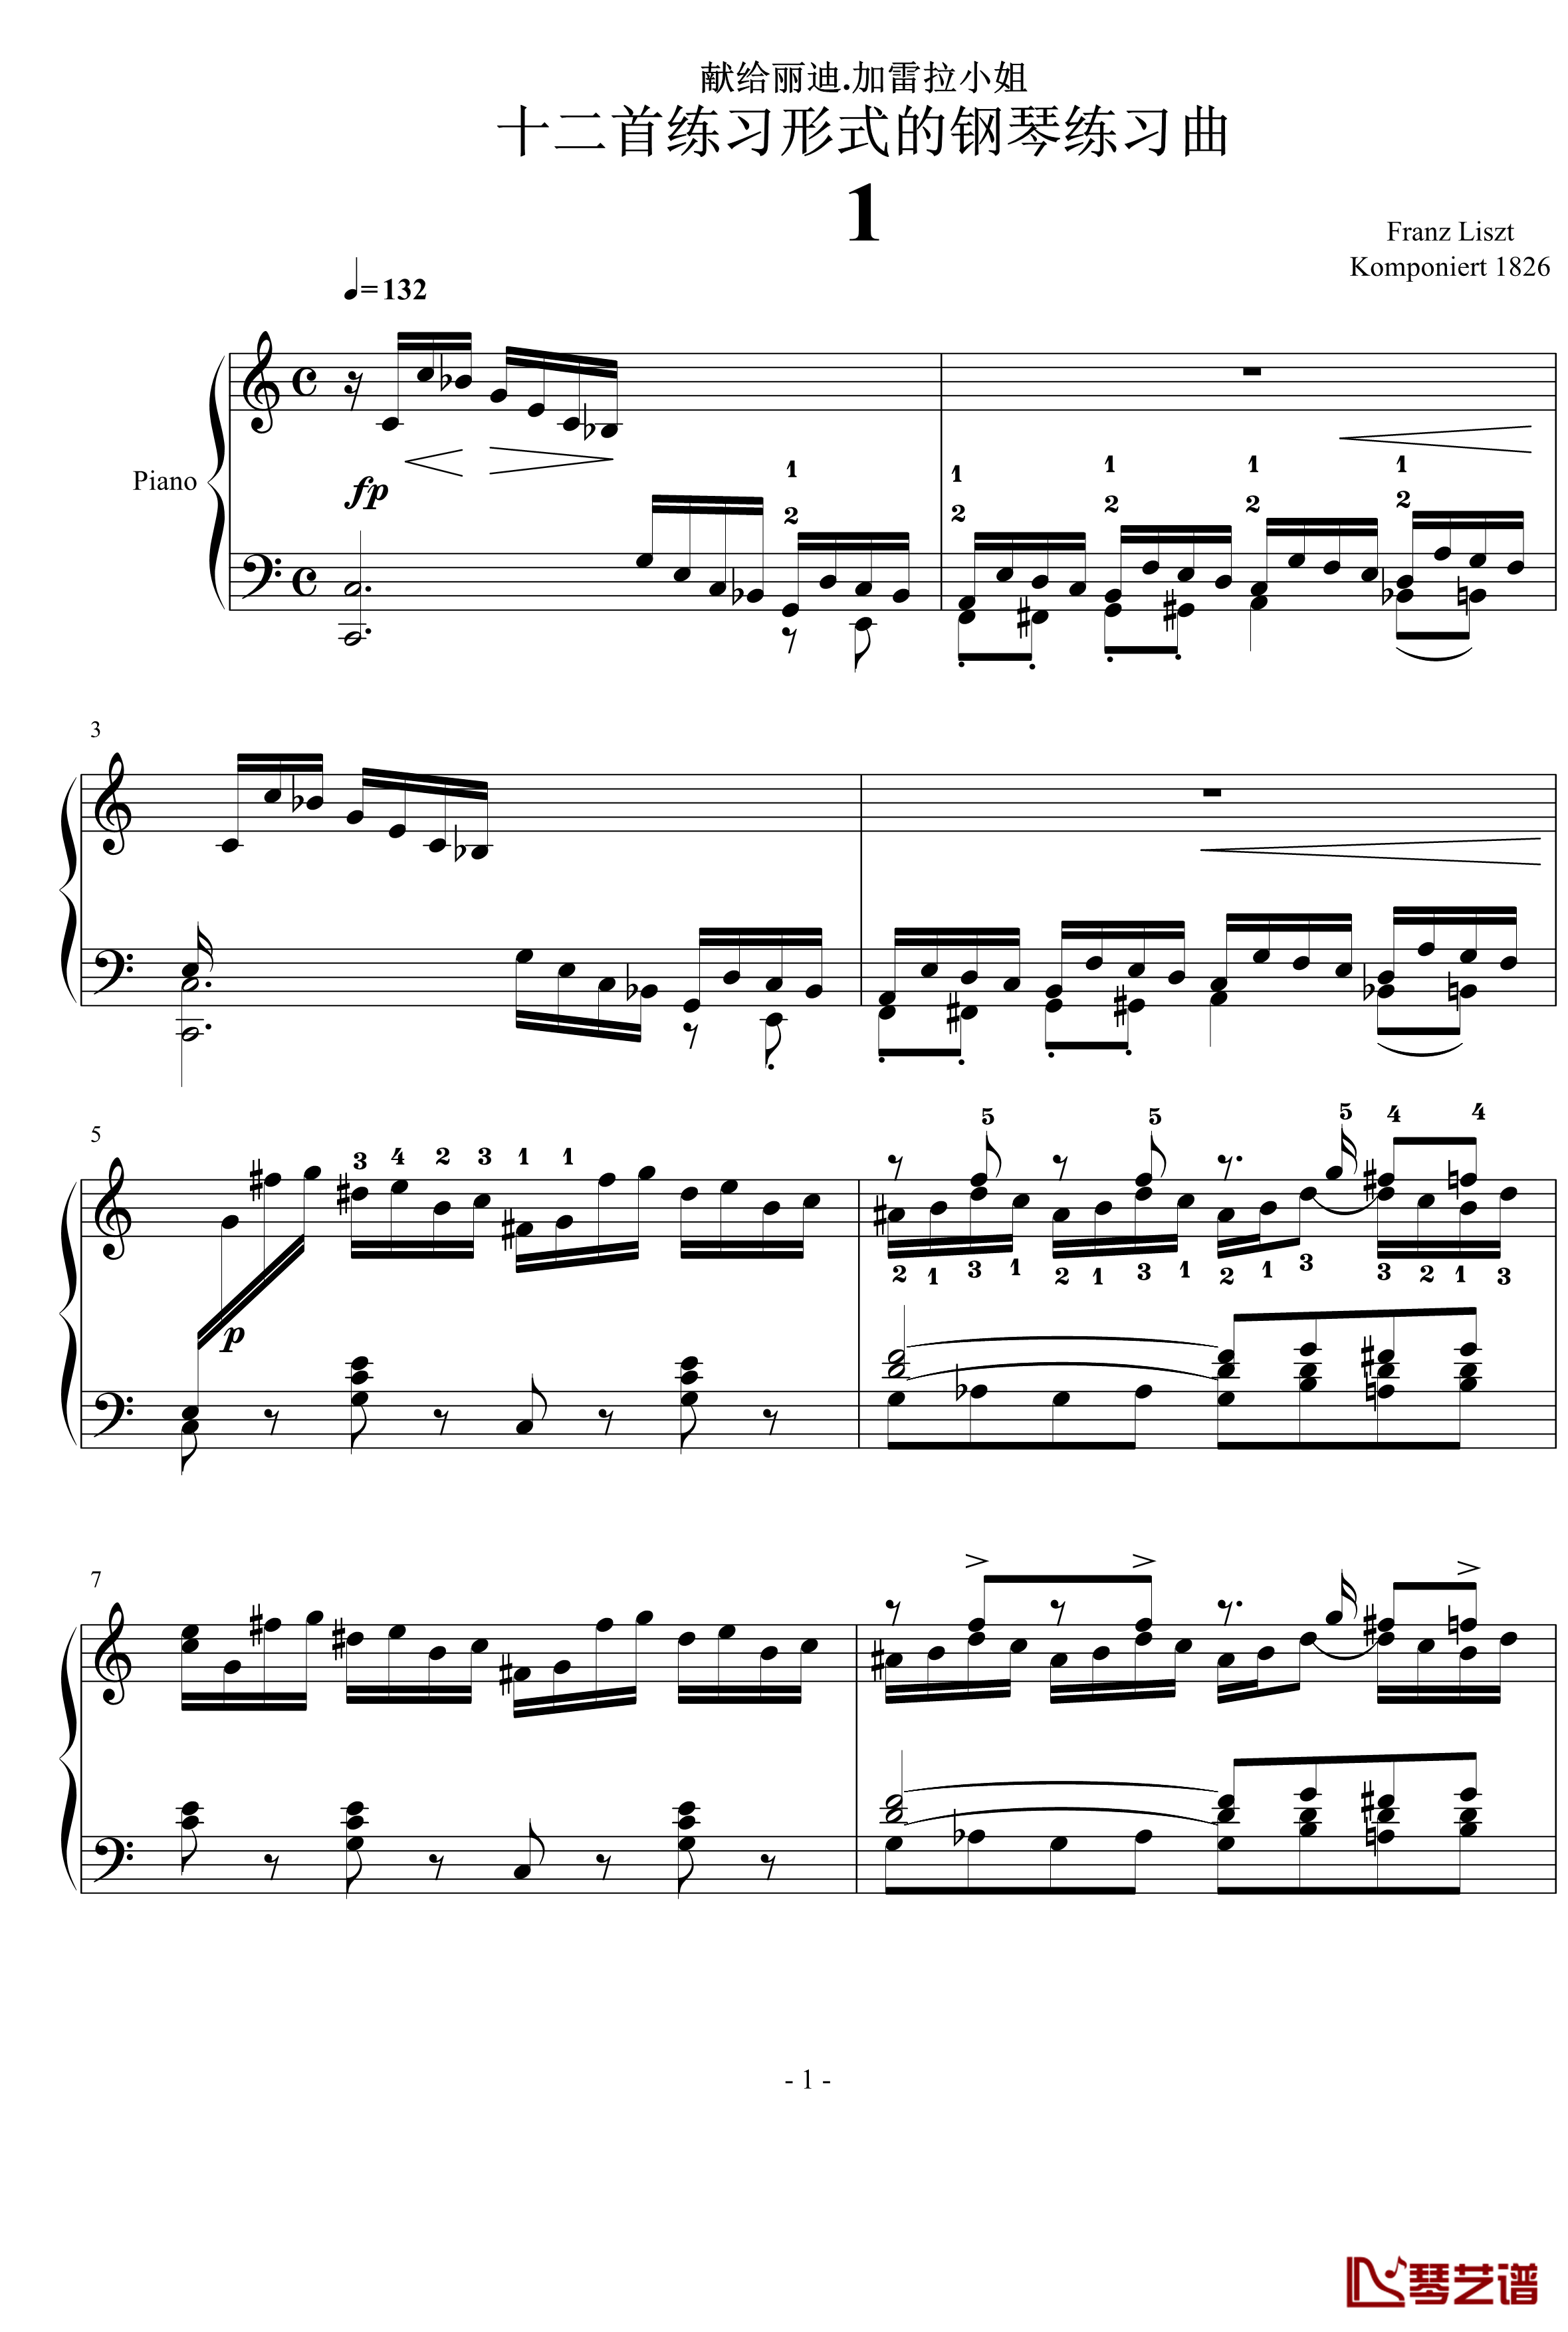 十二首练习形式的钢琴练习曲1钢琴谱-李斯特1